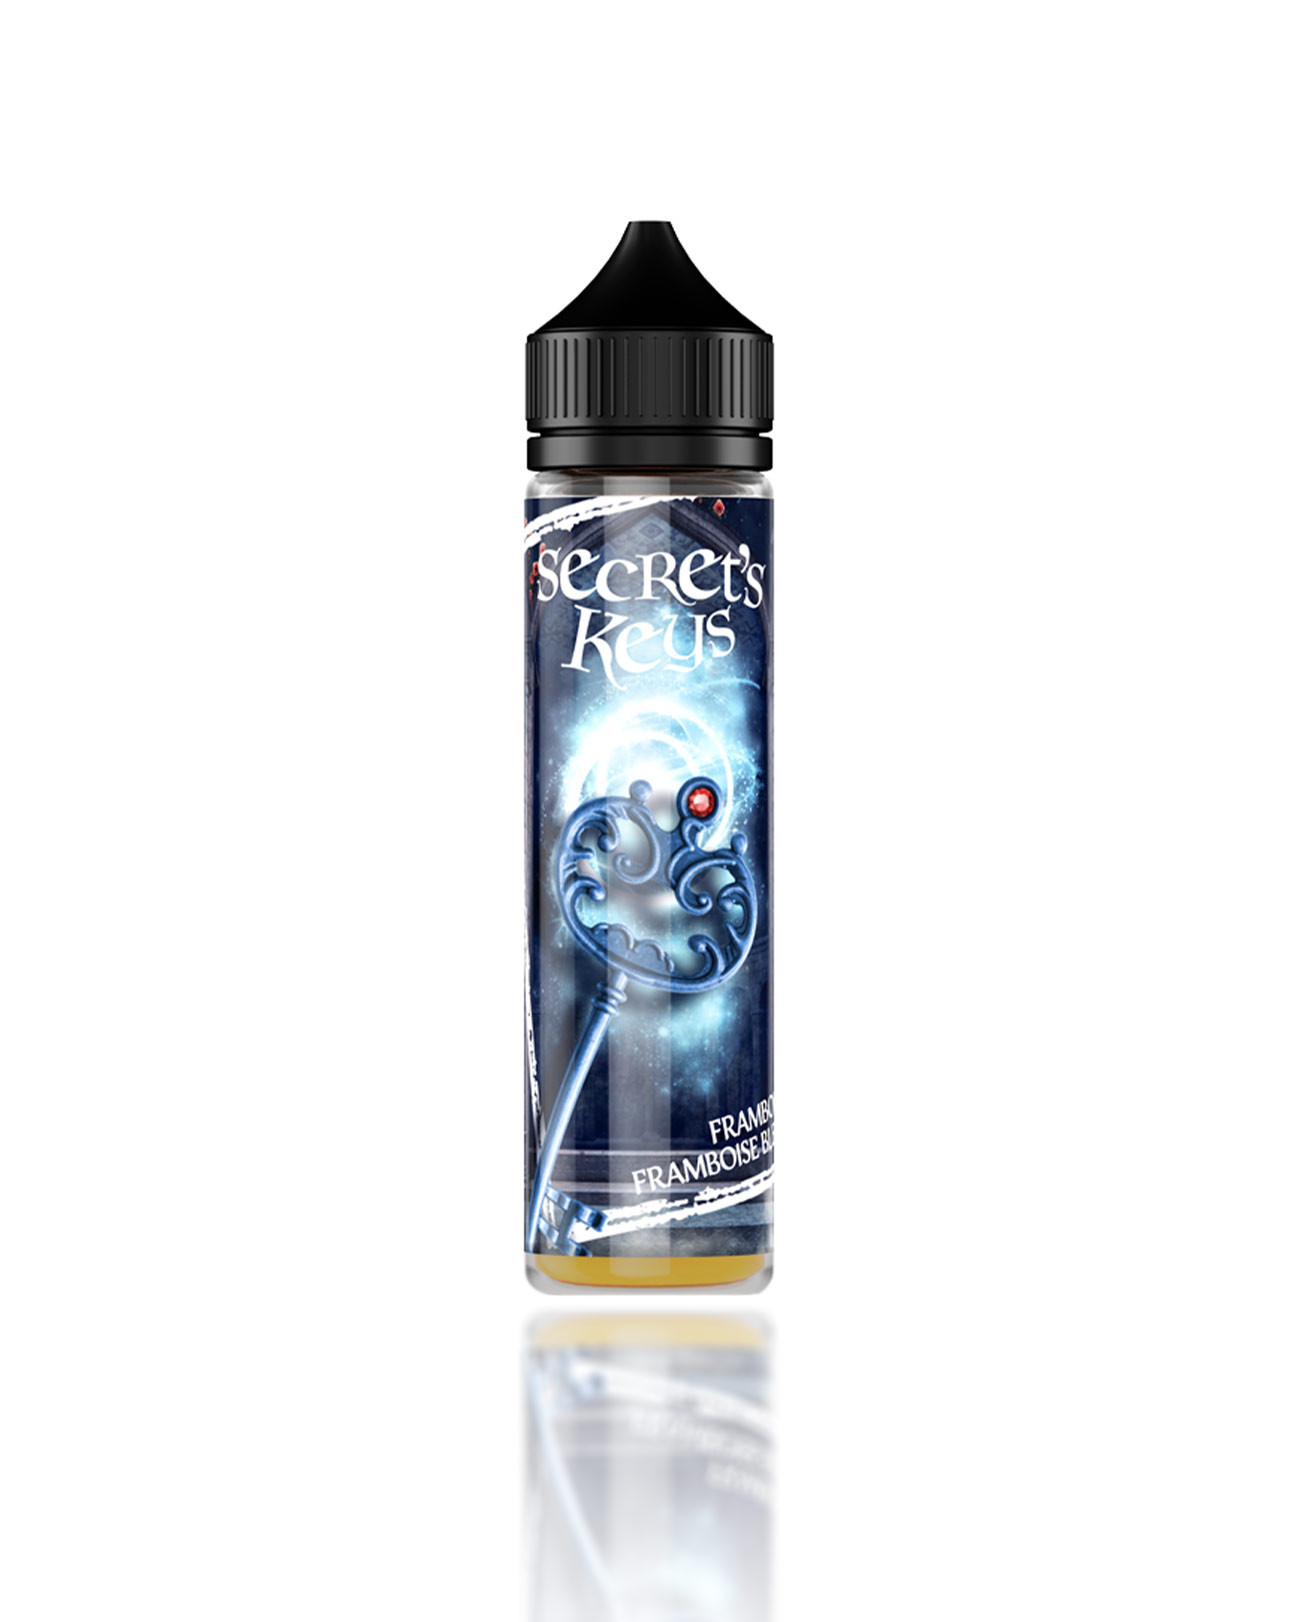 E-liquide 50 ml pour cigarette électronique Secret' Keys Blue parfum framboise et framboise bleue